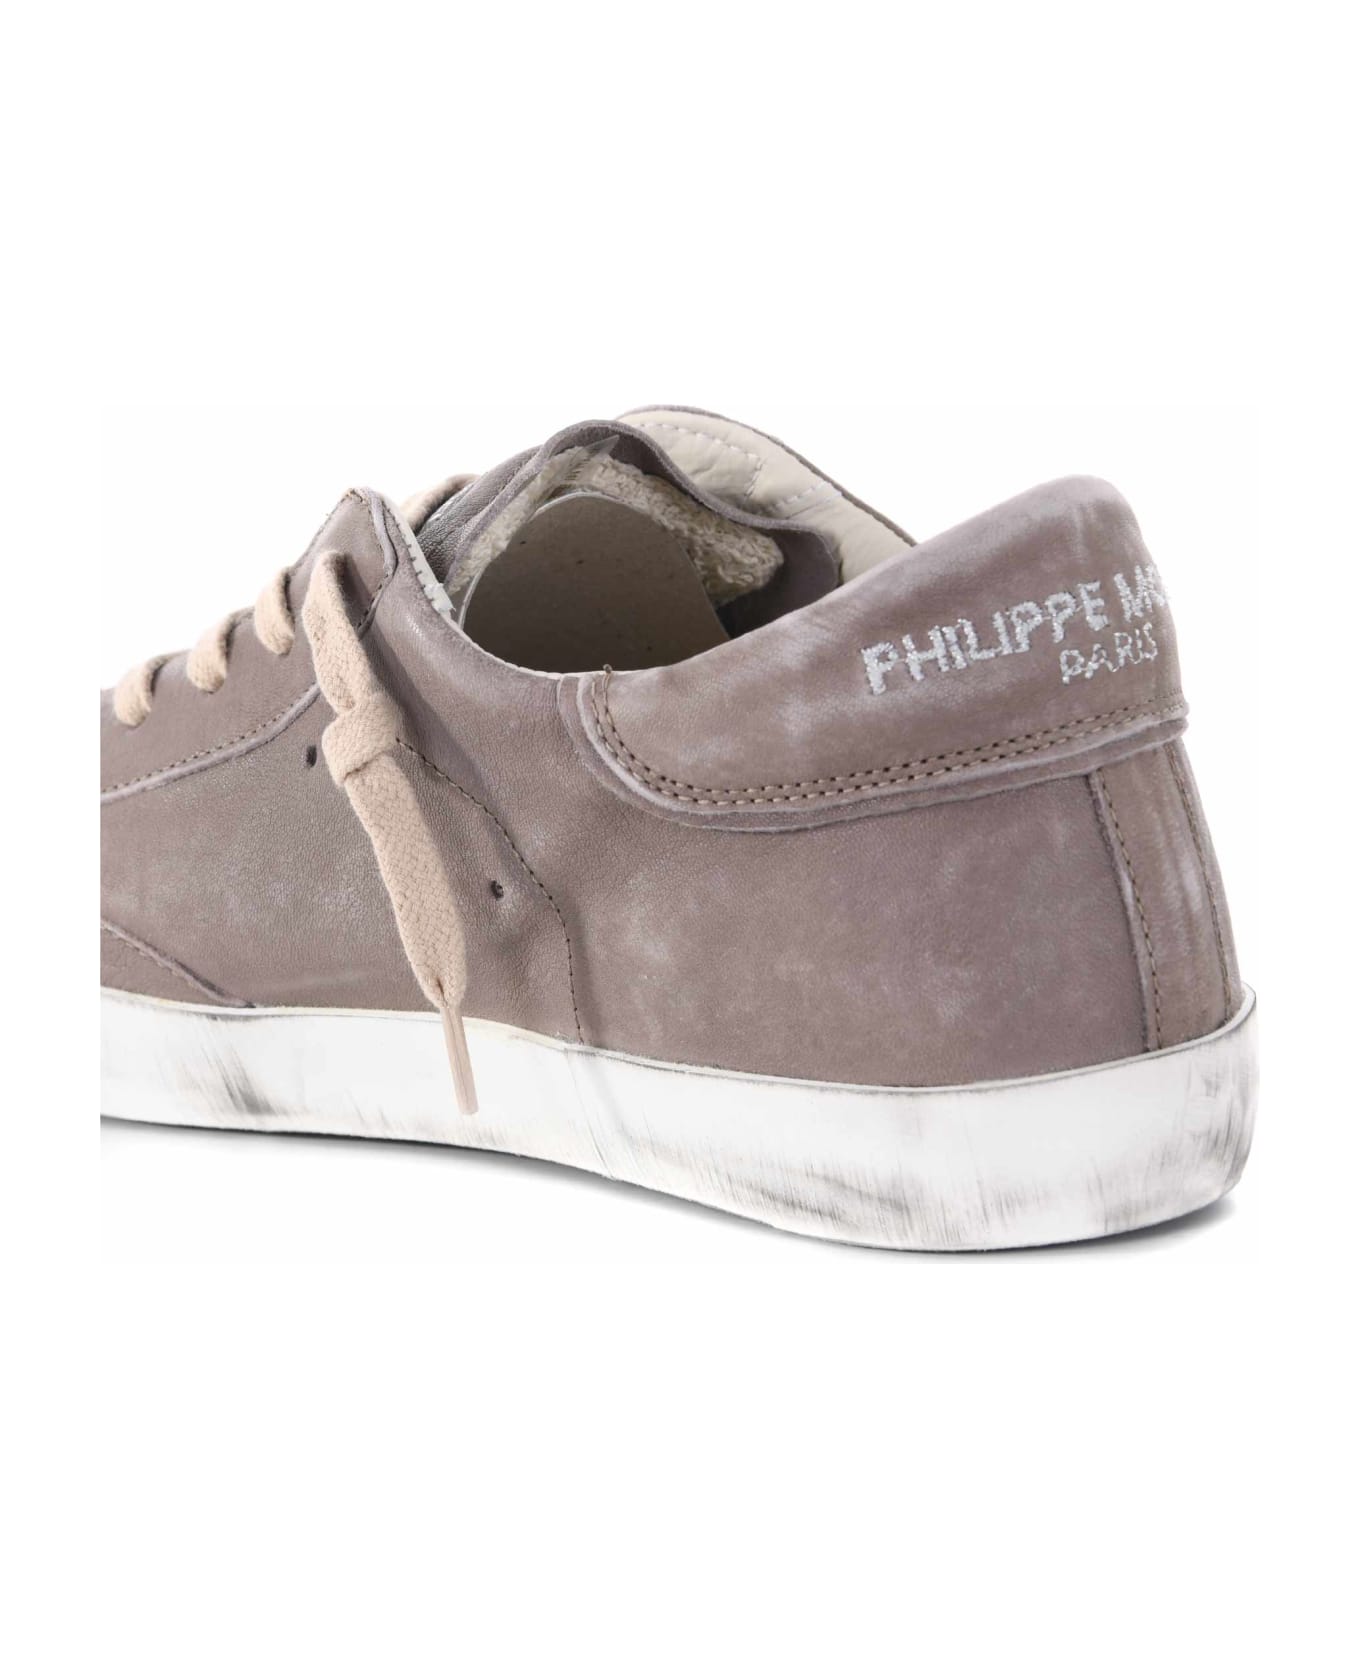 Philippe Model Sneakers Uomo Philippe Model "prsx Low" In Nappa - Tortora